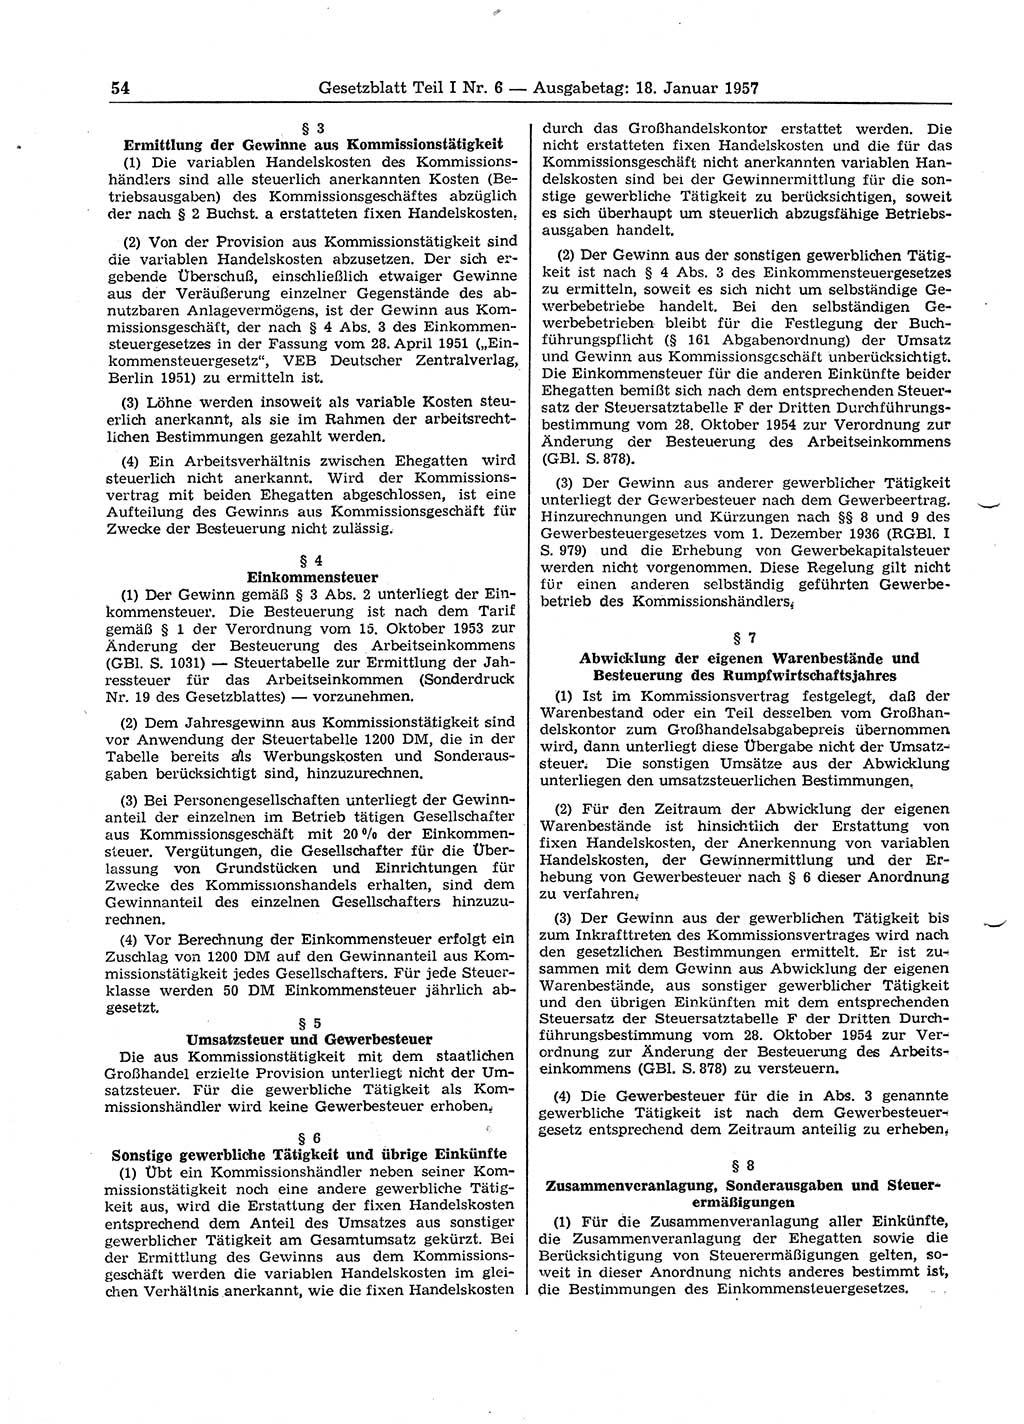 Gesetzblatt (GBl.) der Deutschen Demokratischen Republik (DDR) Teil Ⅰ 1957, Seite 54 (GBl. DDR Ⅰ 1957, S. 54)